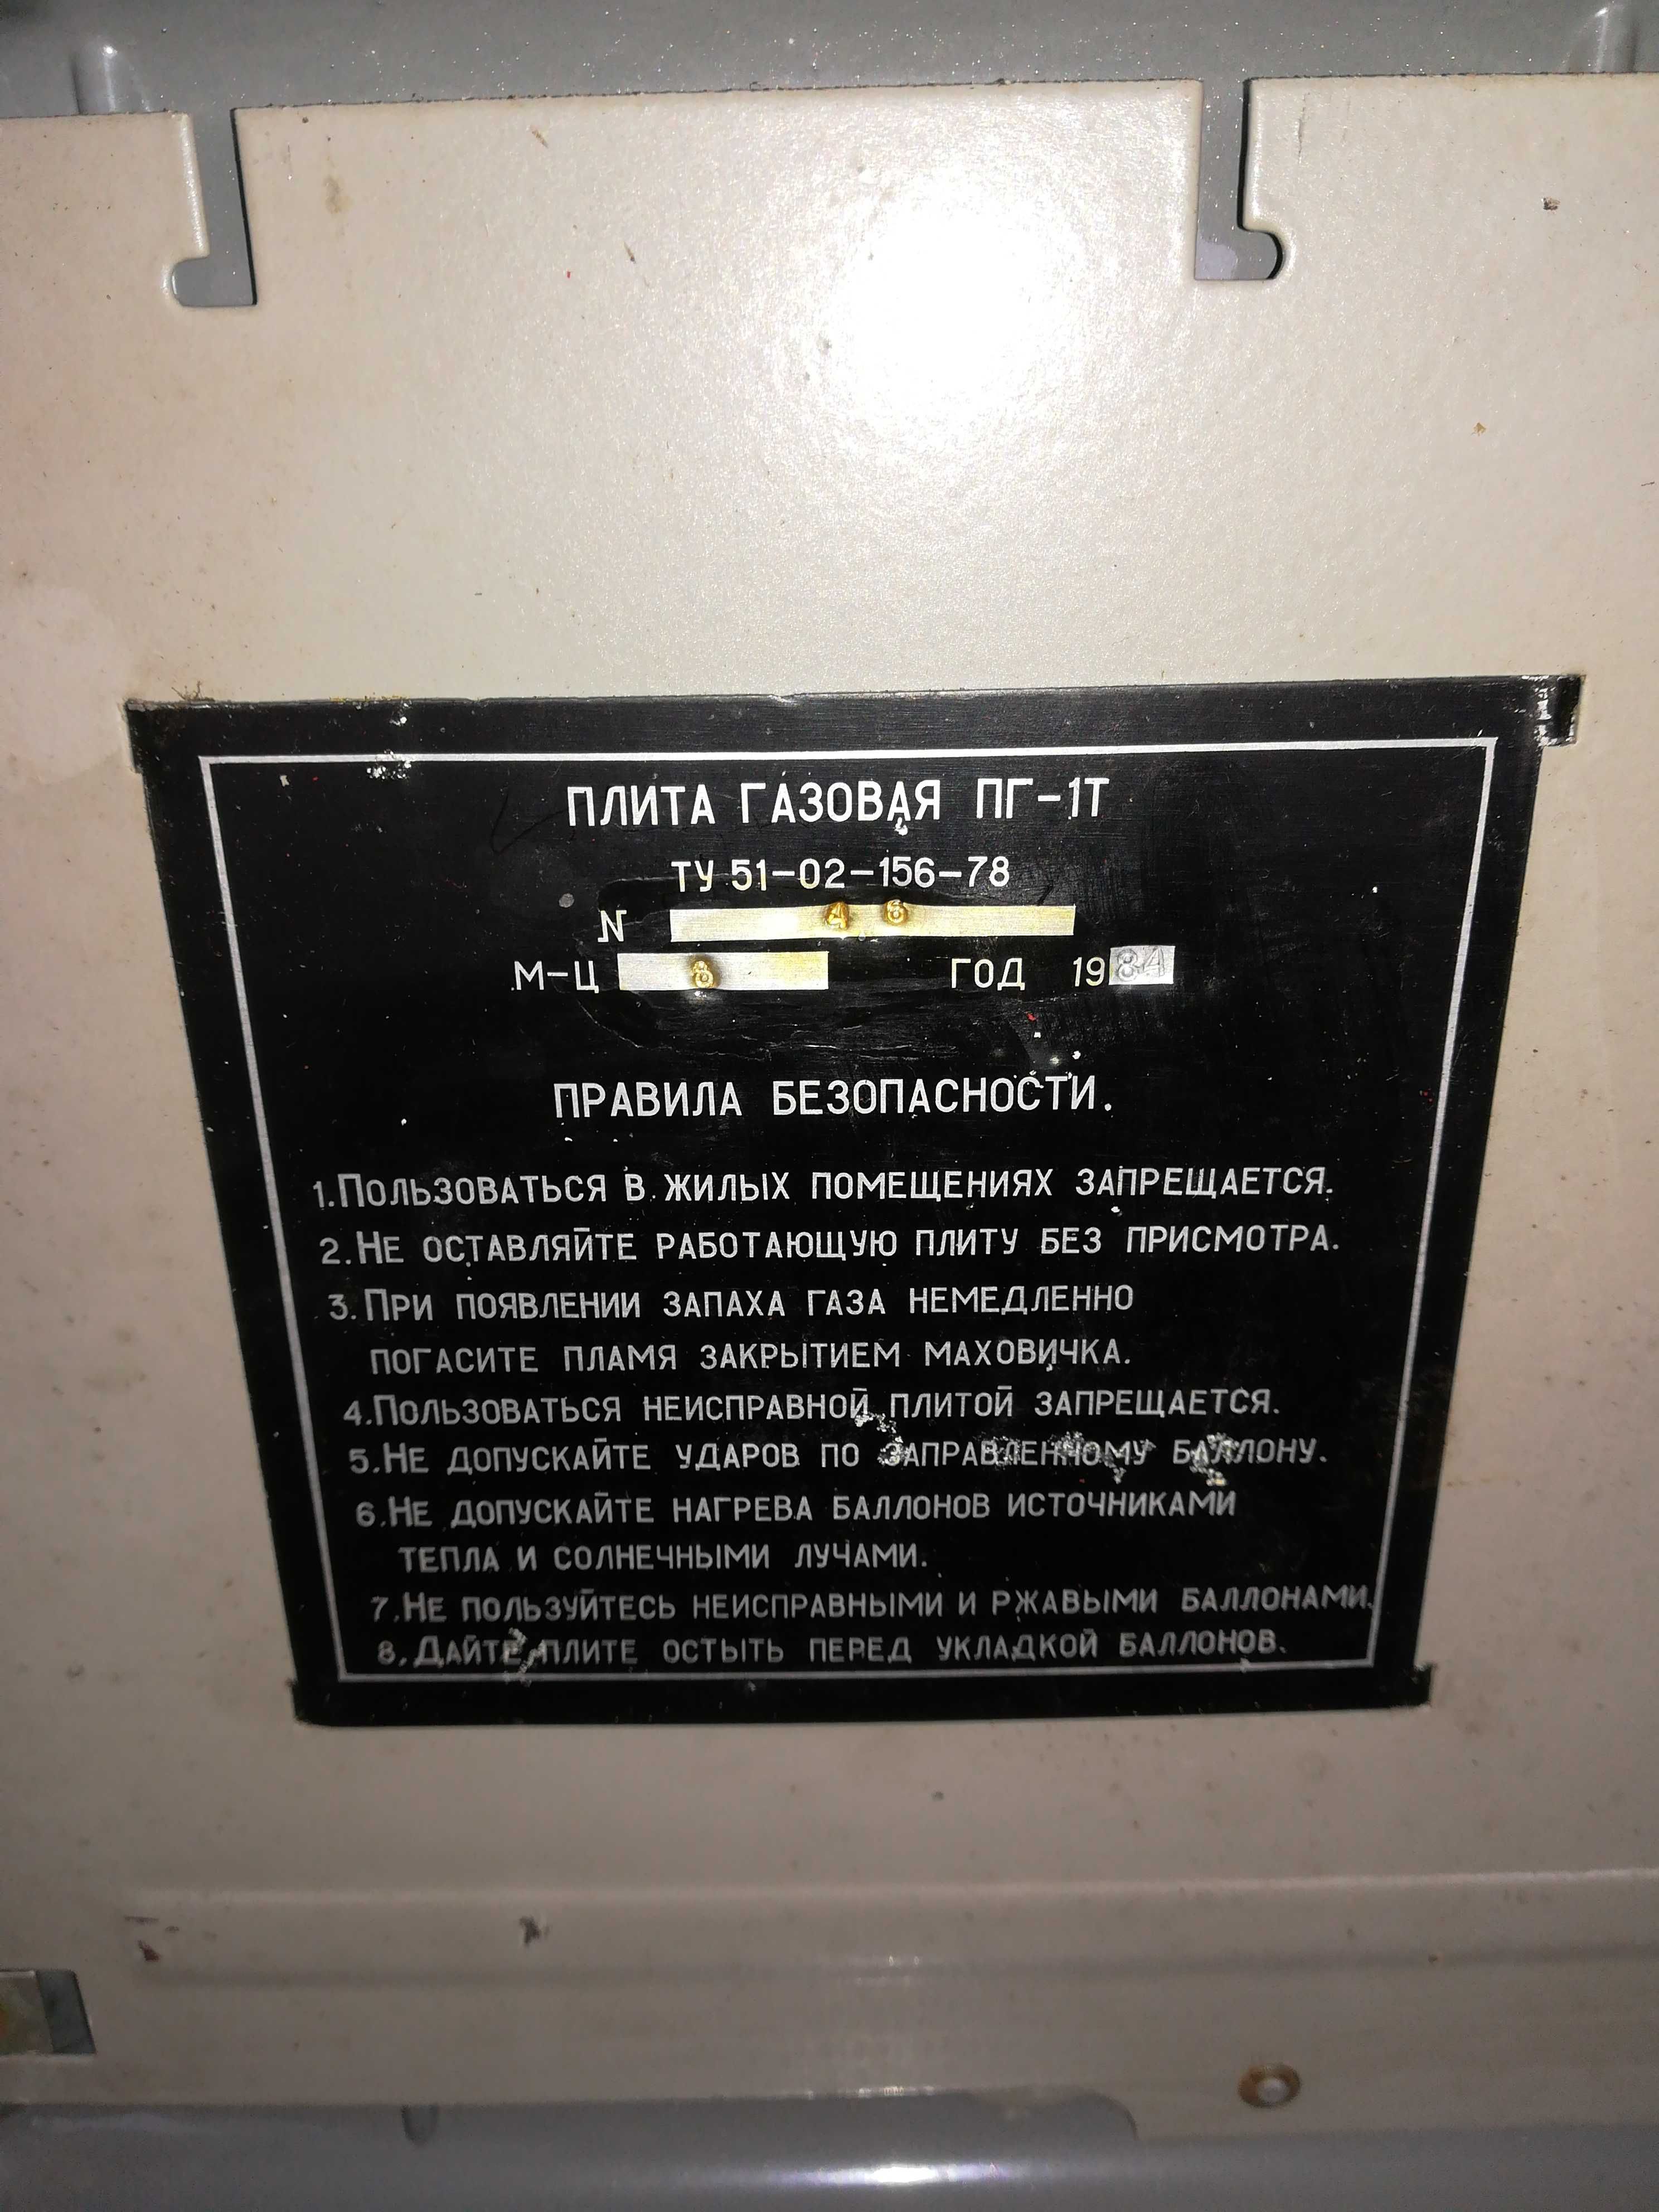 Kuchenka turysty w walizce relikt radziecka ZSRR  kompletna z butlami